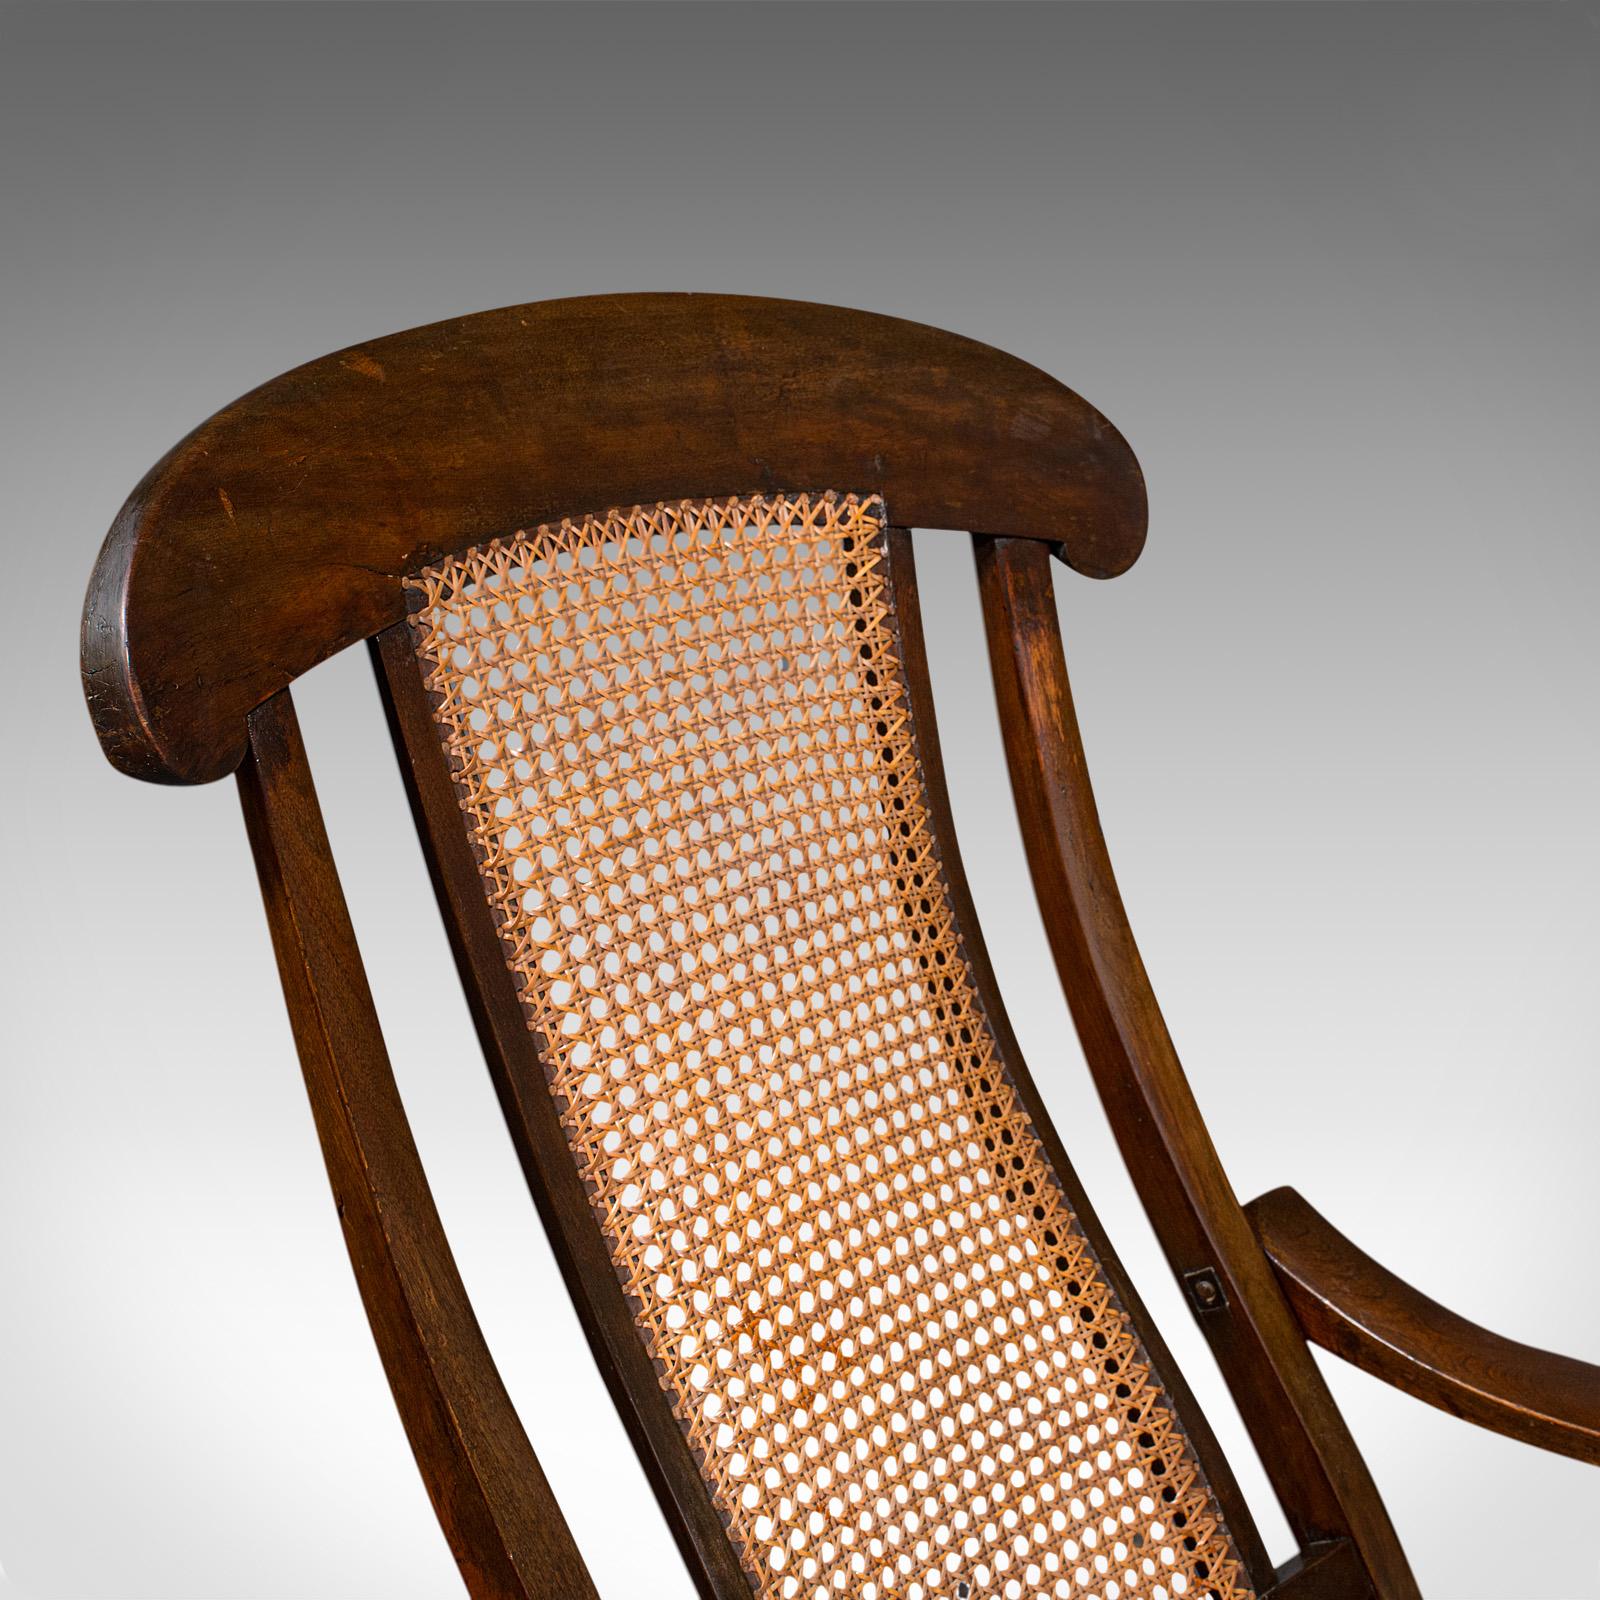 Walnut Antique Steamer Deck Chair, English, Beech, Bergere, Armchair, Edwardian, C.1910